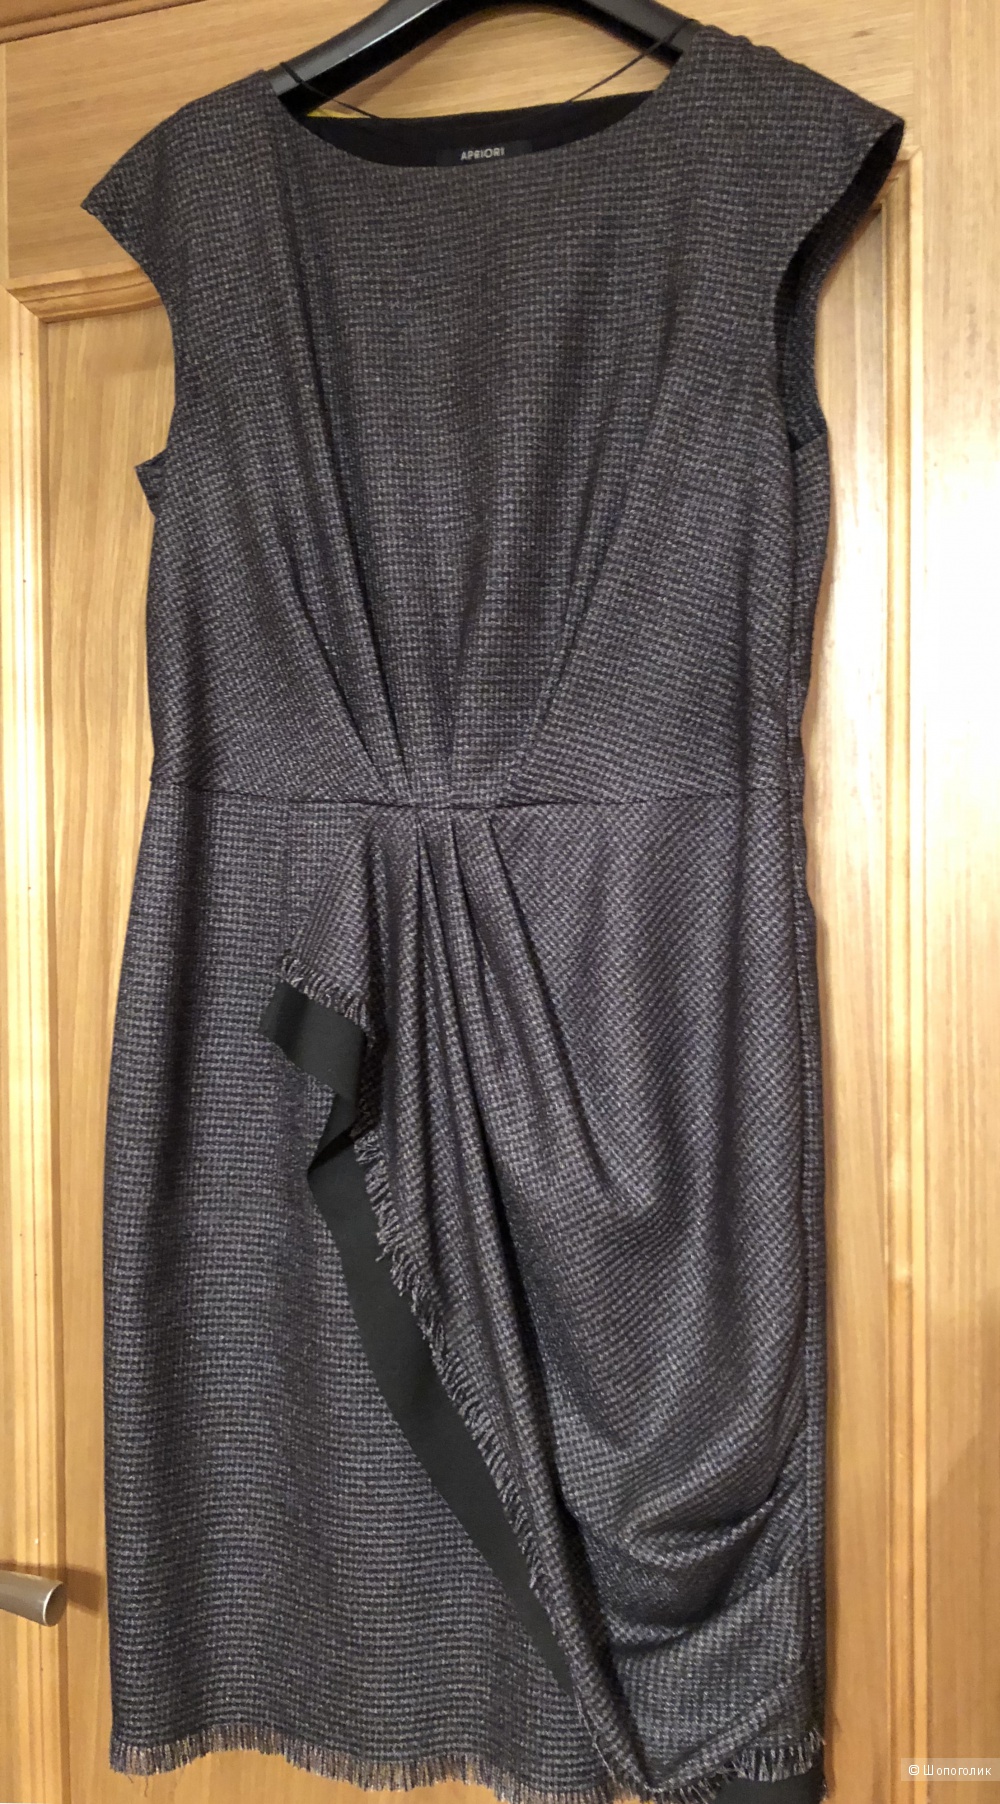 Комплект :платье  и жакет бренд  Apriori размер 46-48